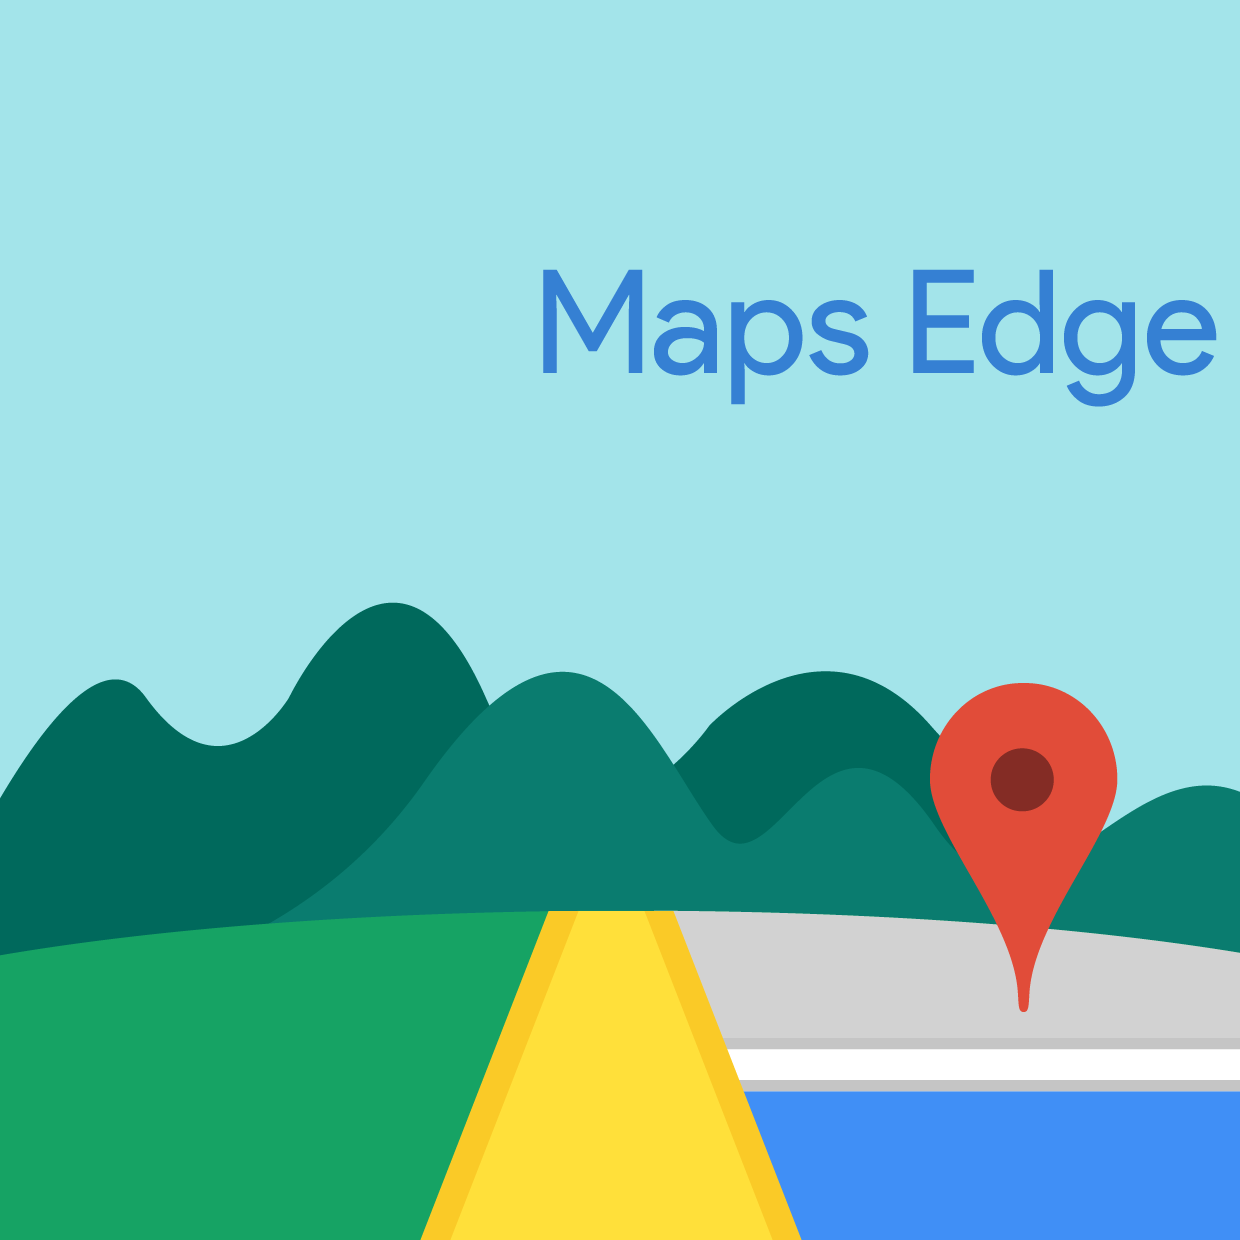 Maps Edge